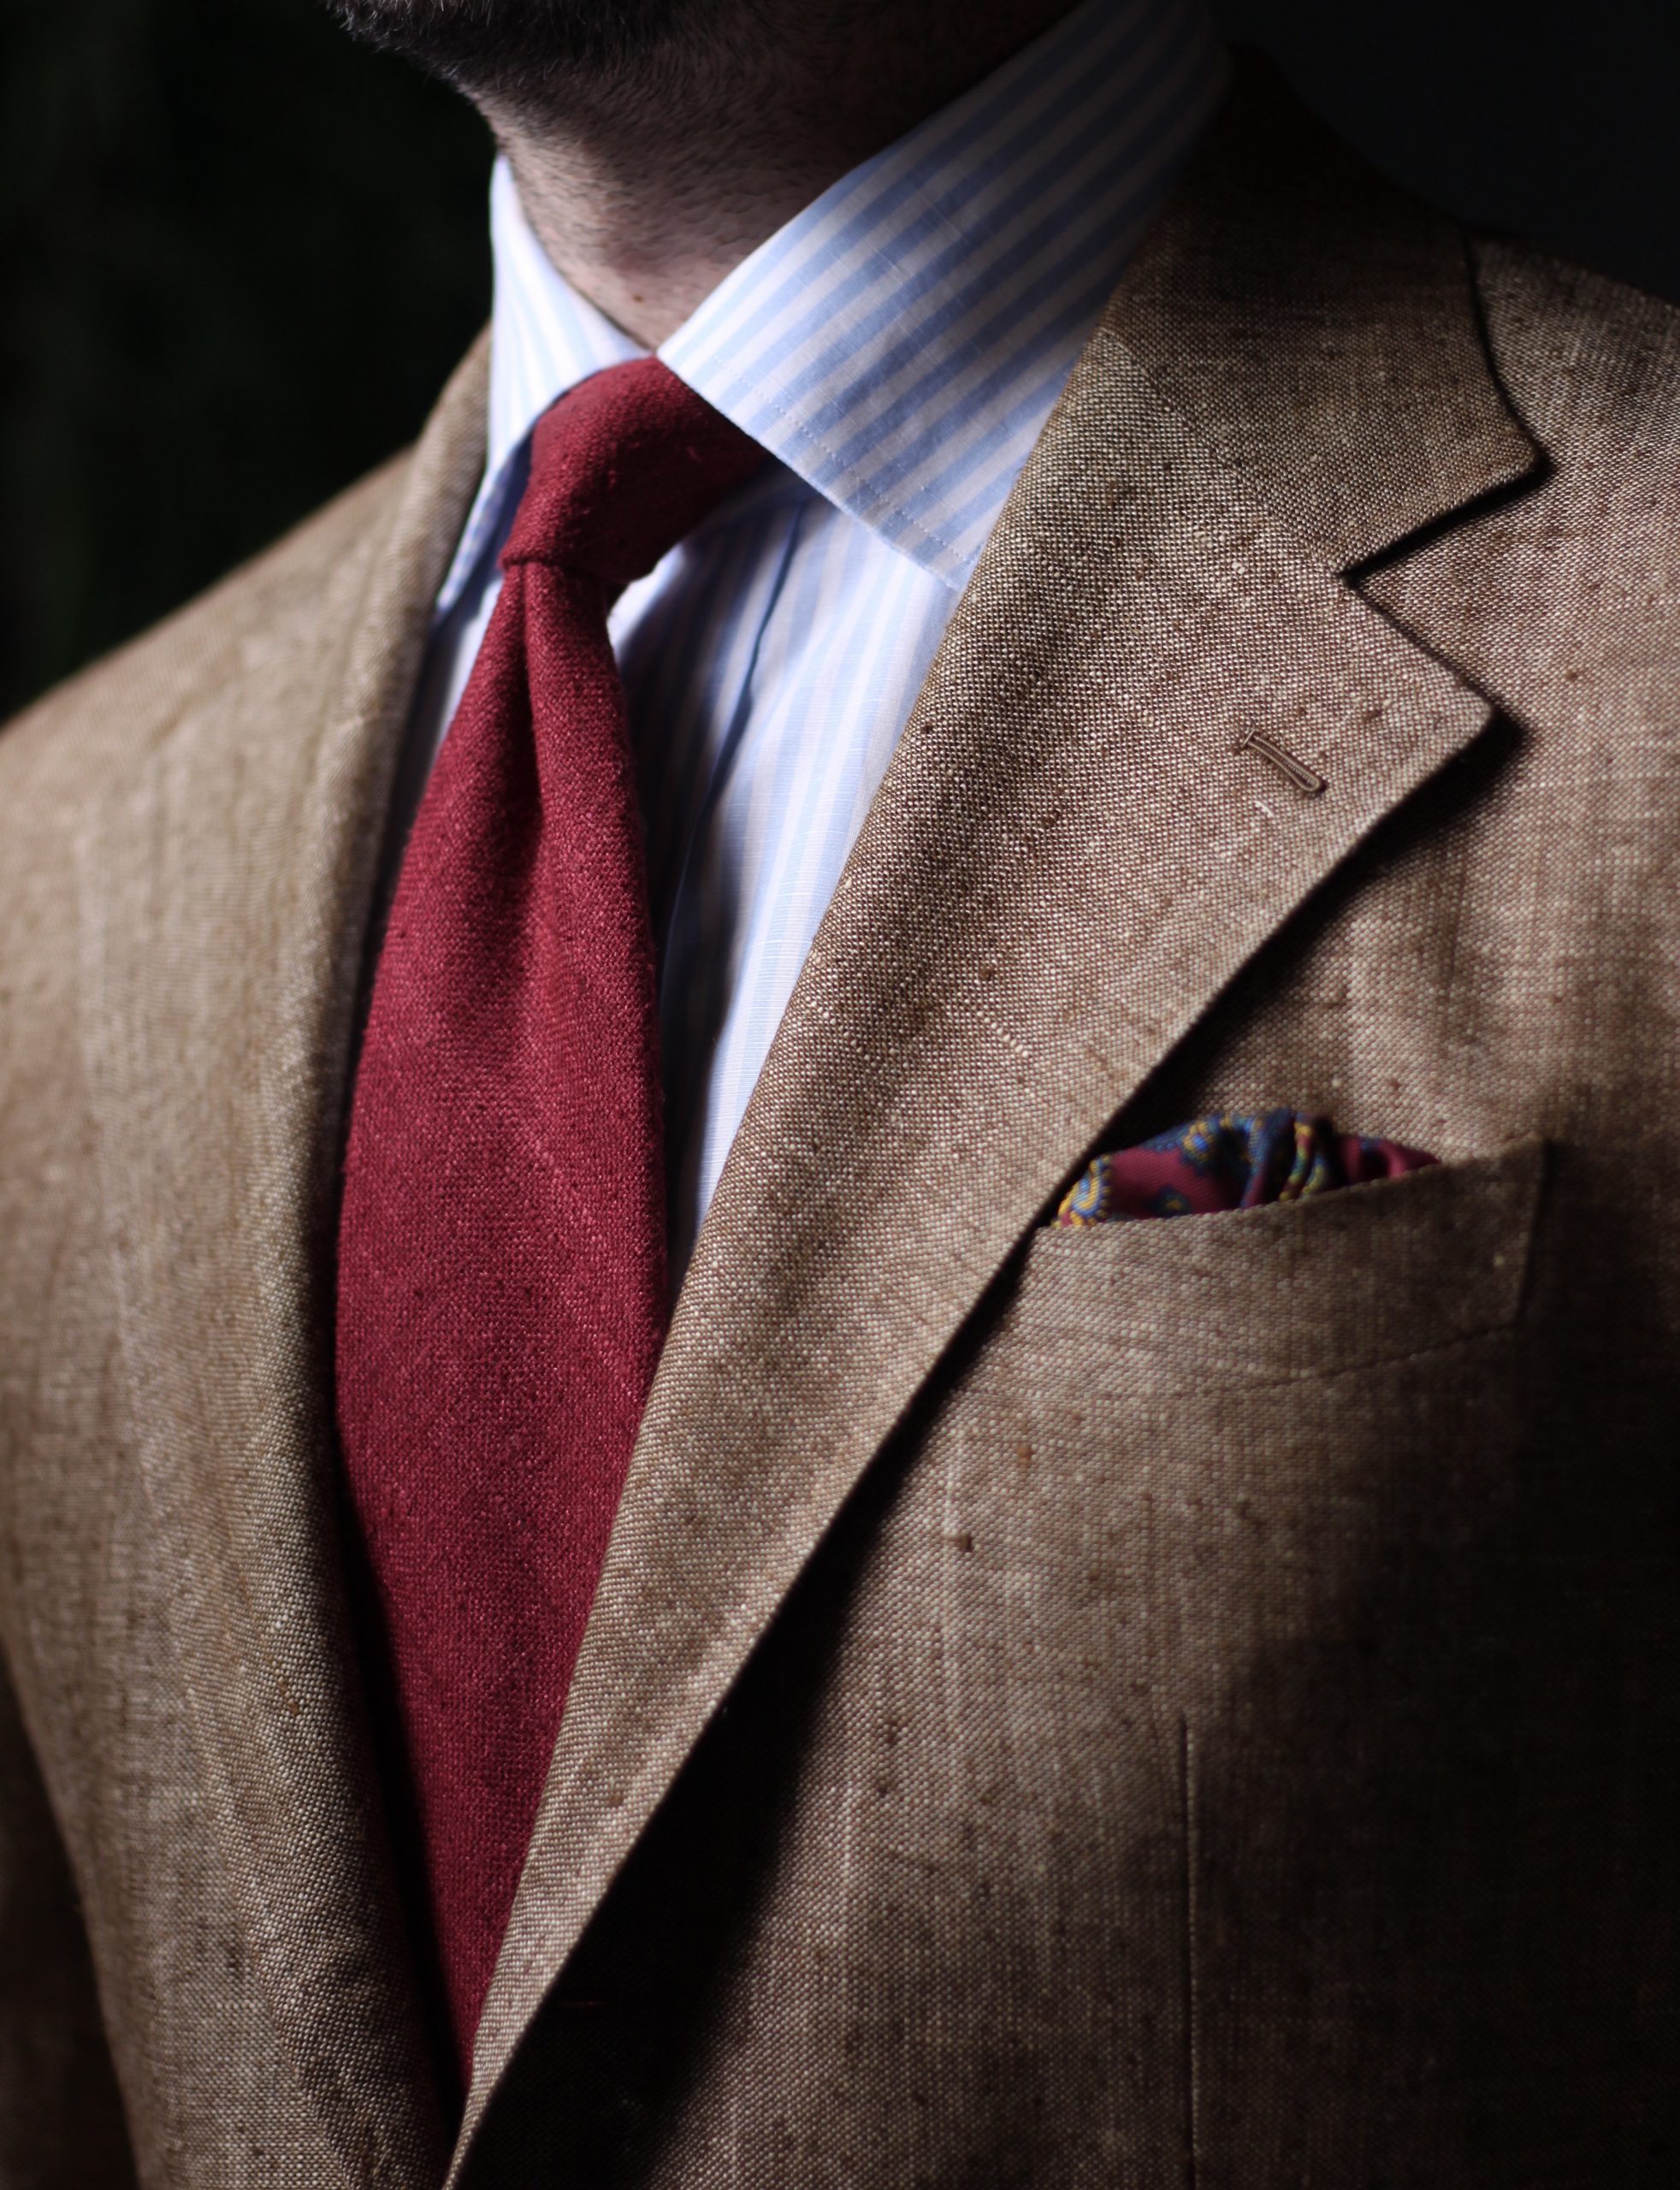 spier and mackay mto, summer tweed, die! workwear, after the suit, spier and mackay, mto, red and brown